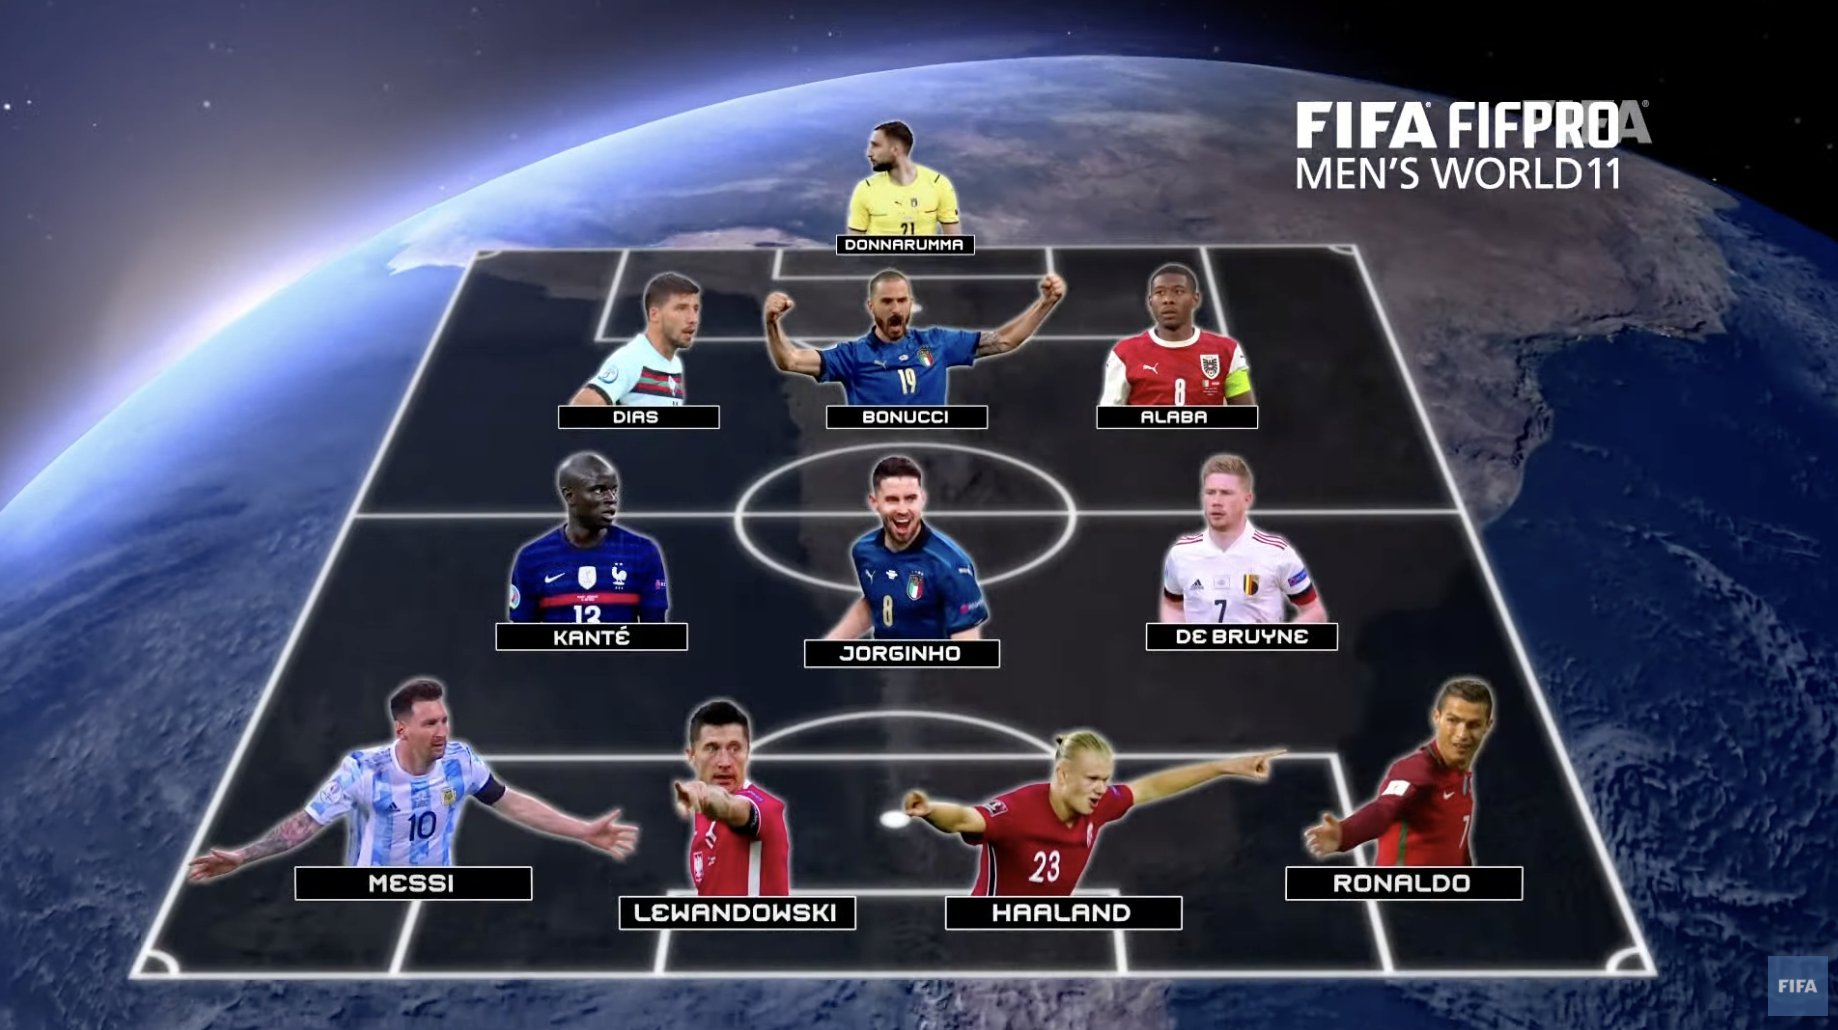 FIFA FIFPRO Men’s World eleven adjusted to contain Cristiano Ronaldo